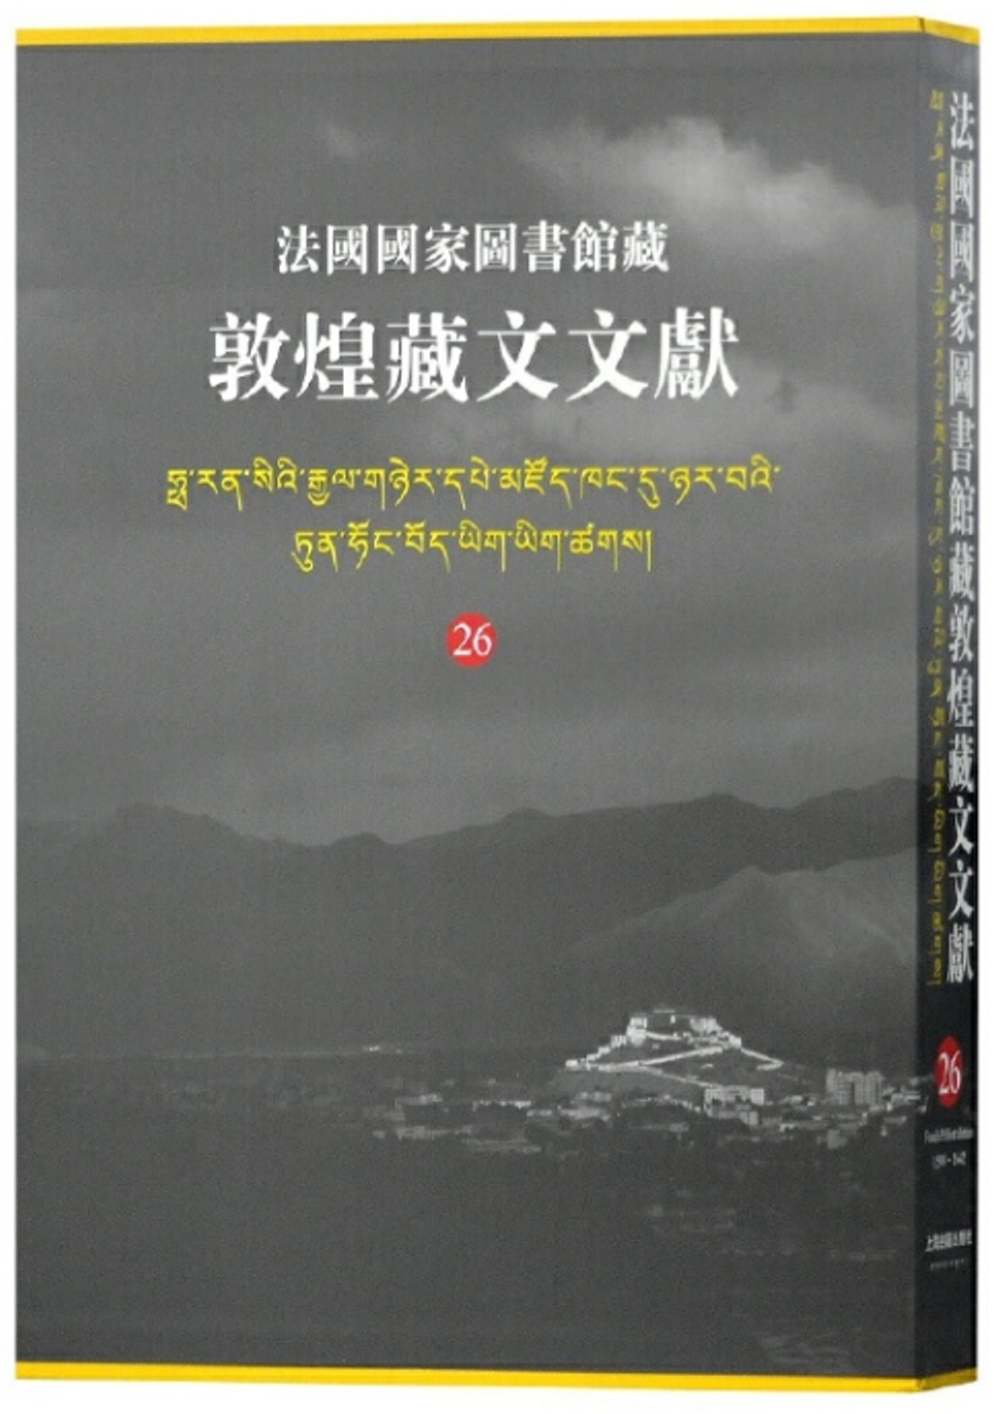 法國國家圖書館藏敦煌藏文文獻26